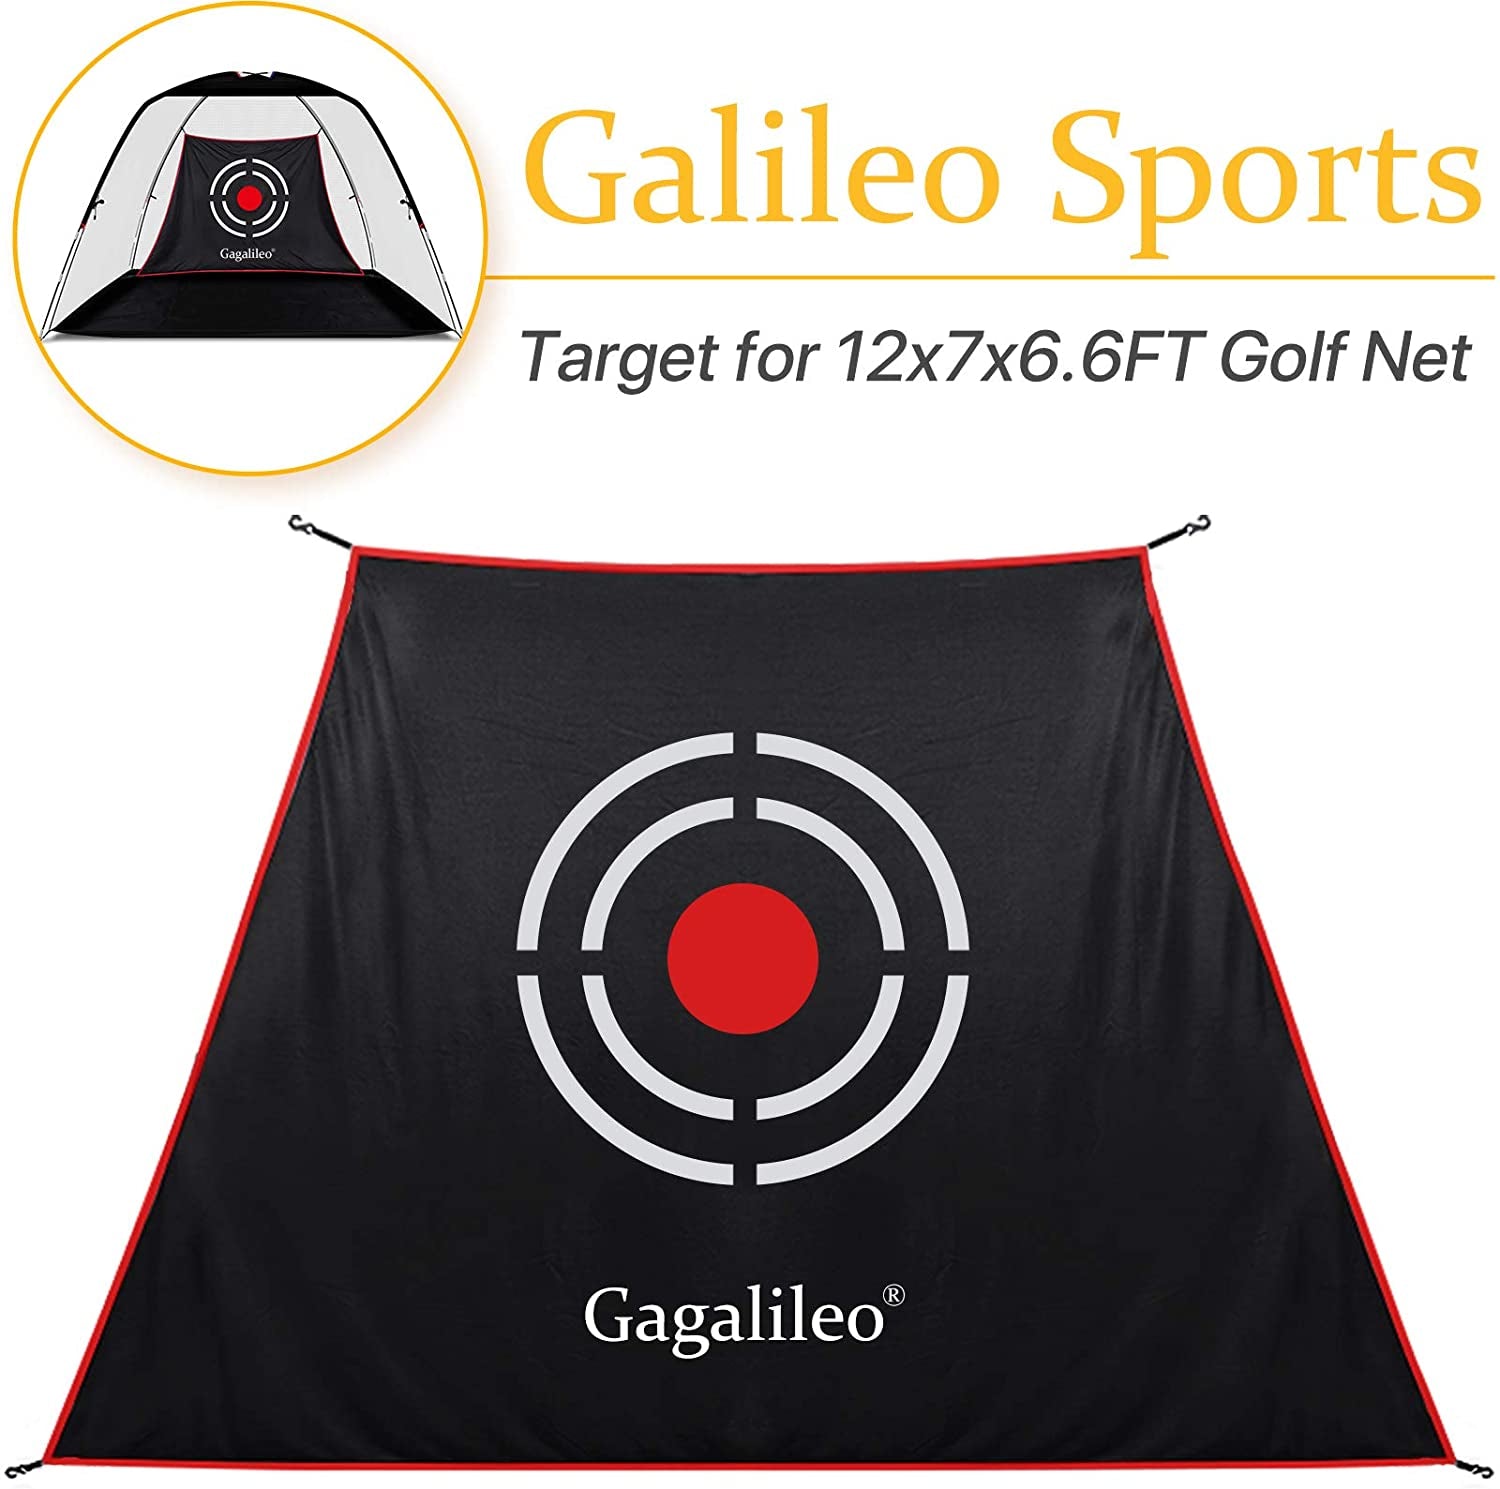 Remplacement de la cible de golf en forme d'échelle Galileo